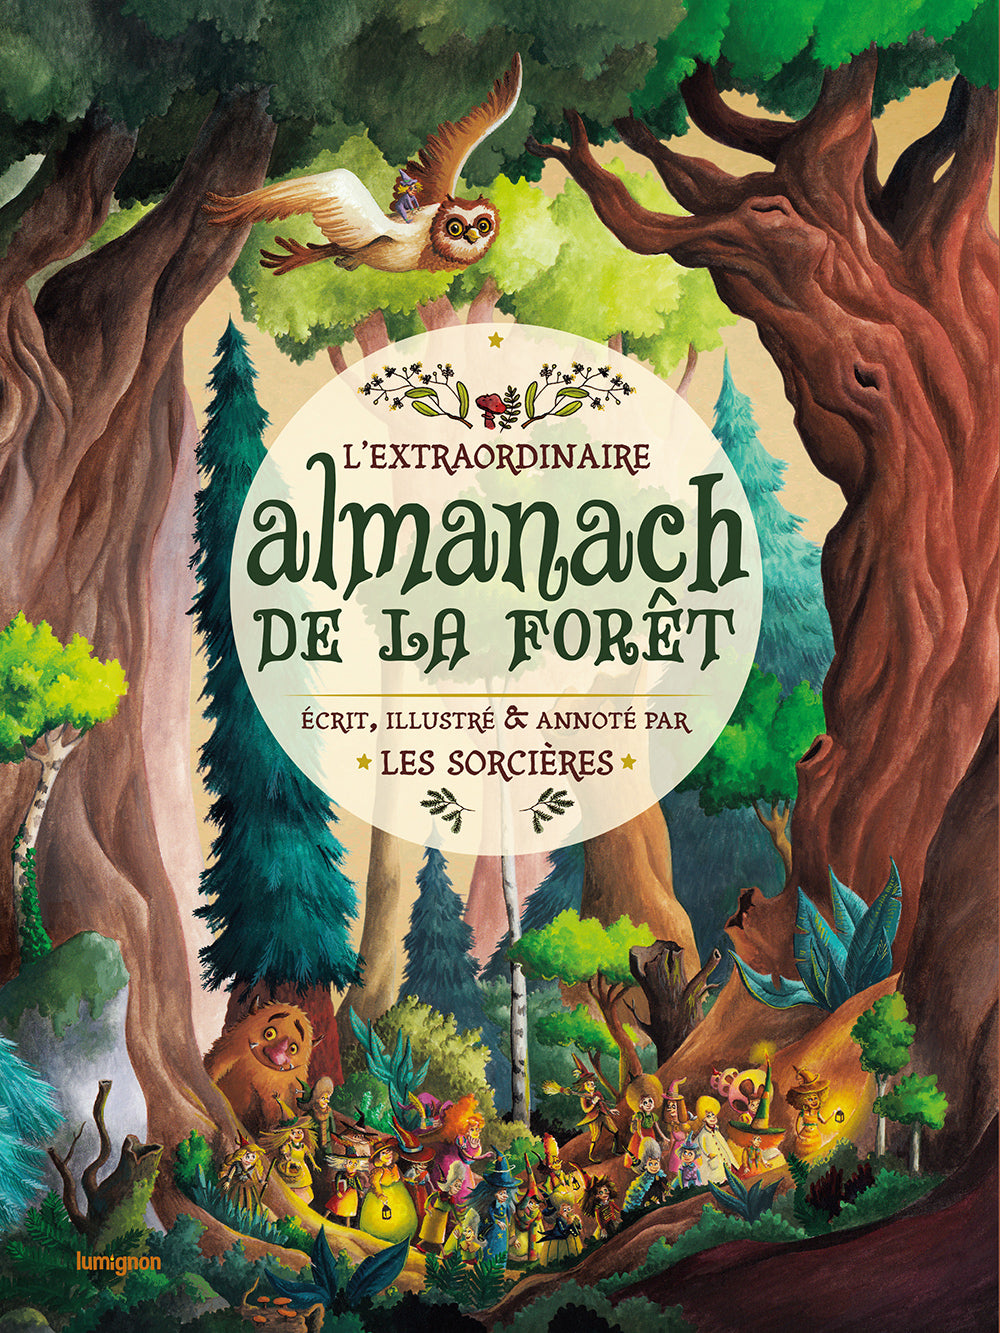 Extraordinaire almanach de la forêt, écrit, illustré et annoté par les sorcières